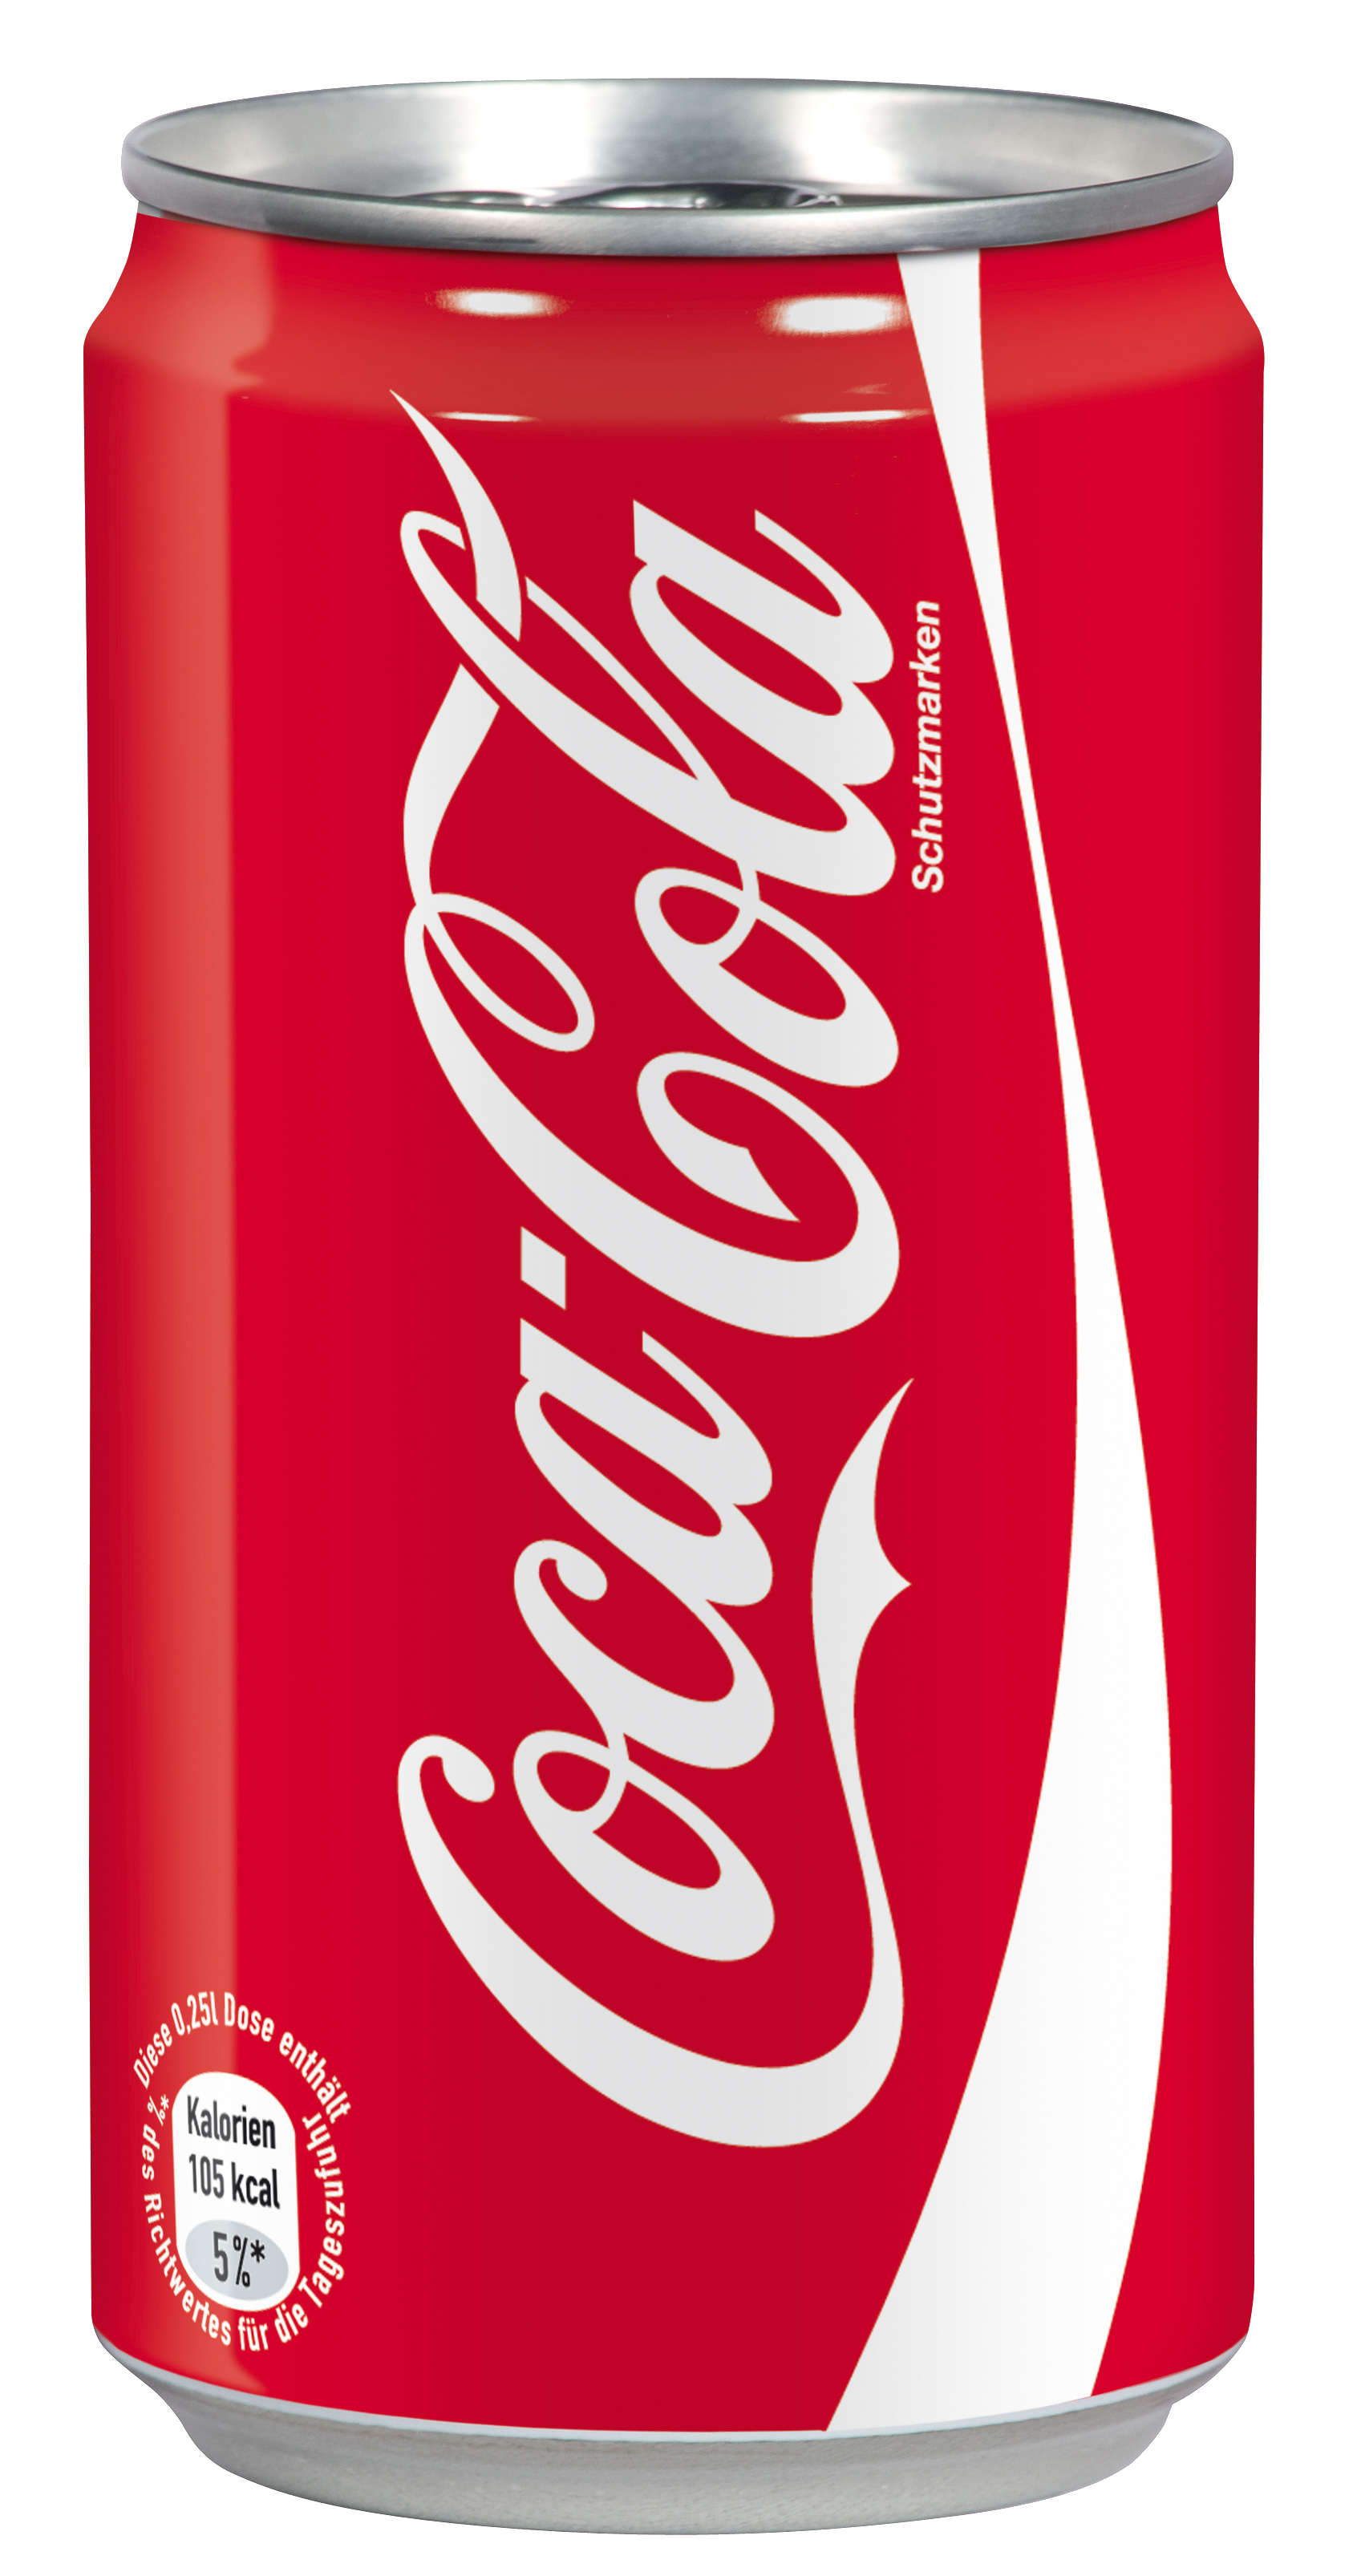 Coca Cola clipart soda bottle